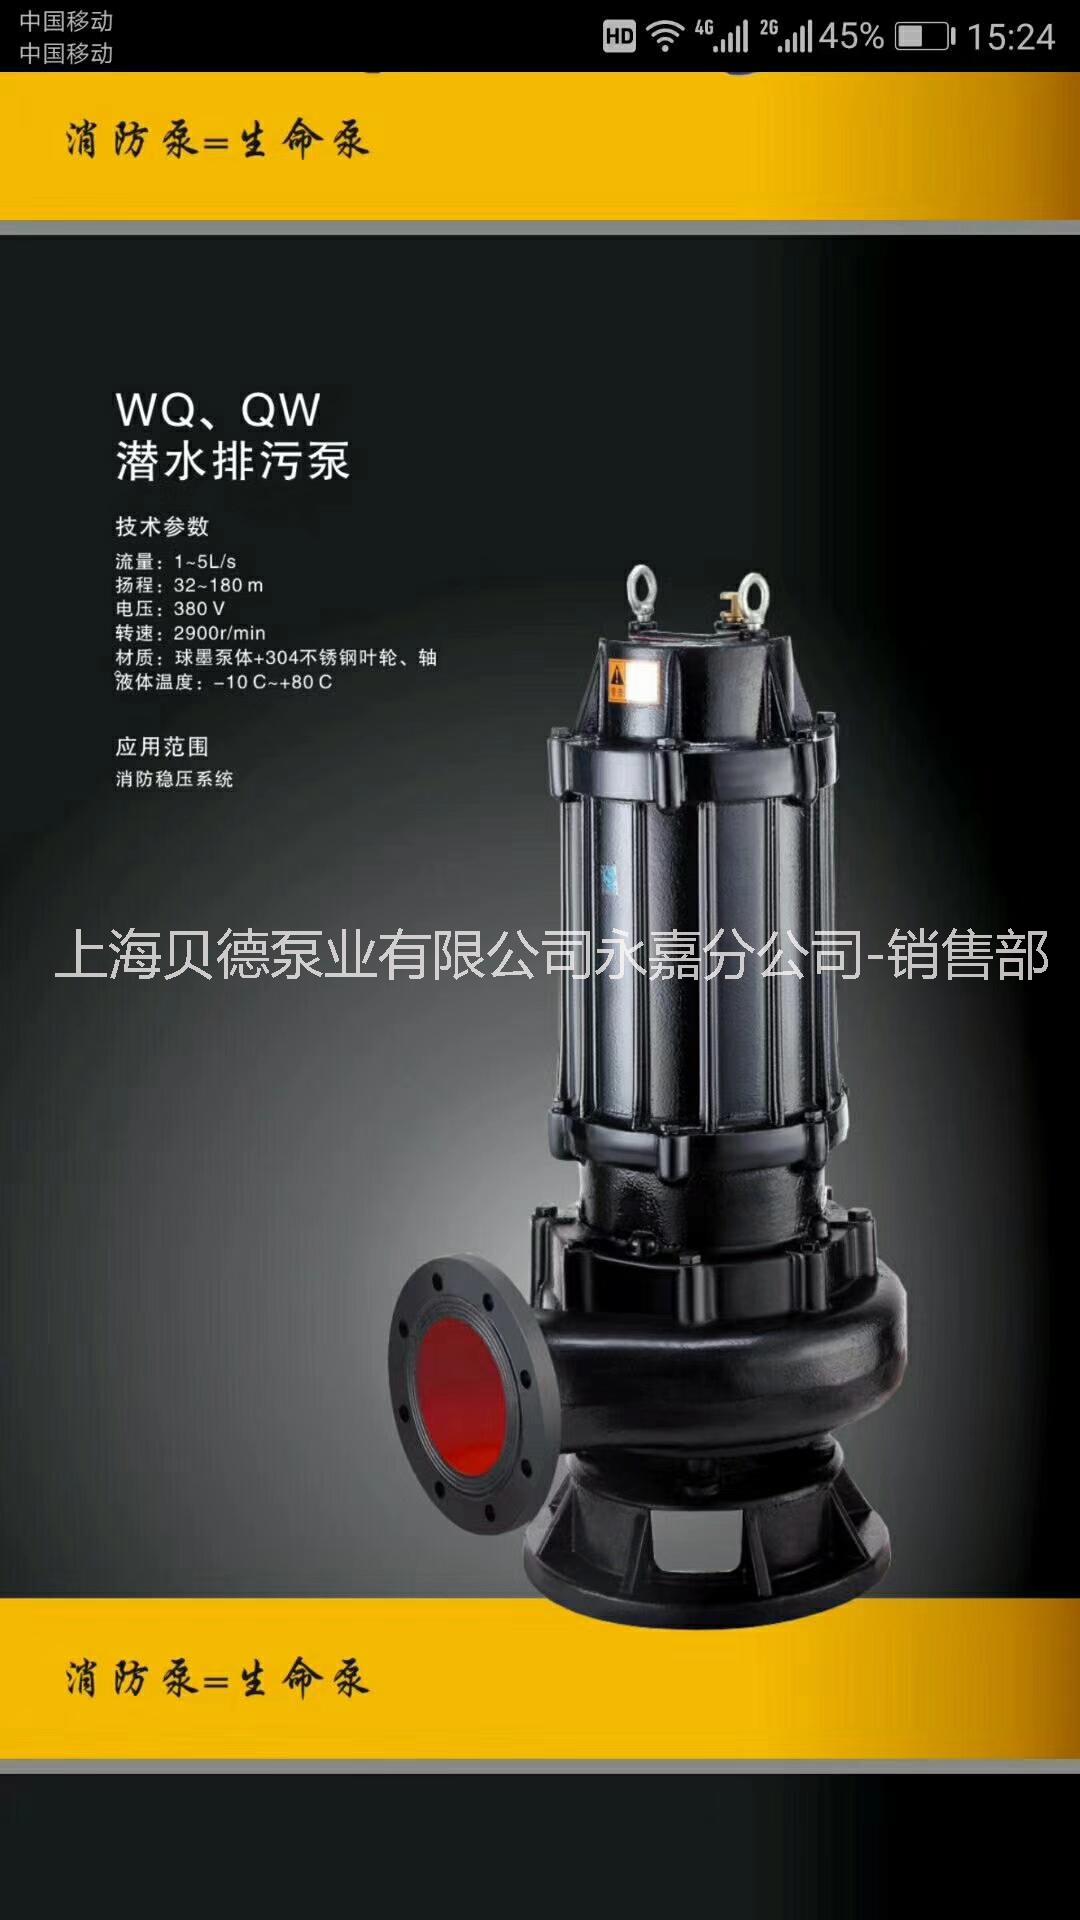 上海贝德泵业有限公司QW潜水排污泵批发，50WQ15-20  2.2KW 证件齐全，价格优惠 QW潜水排污泵图片